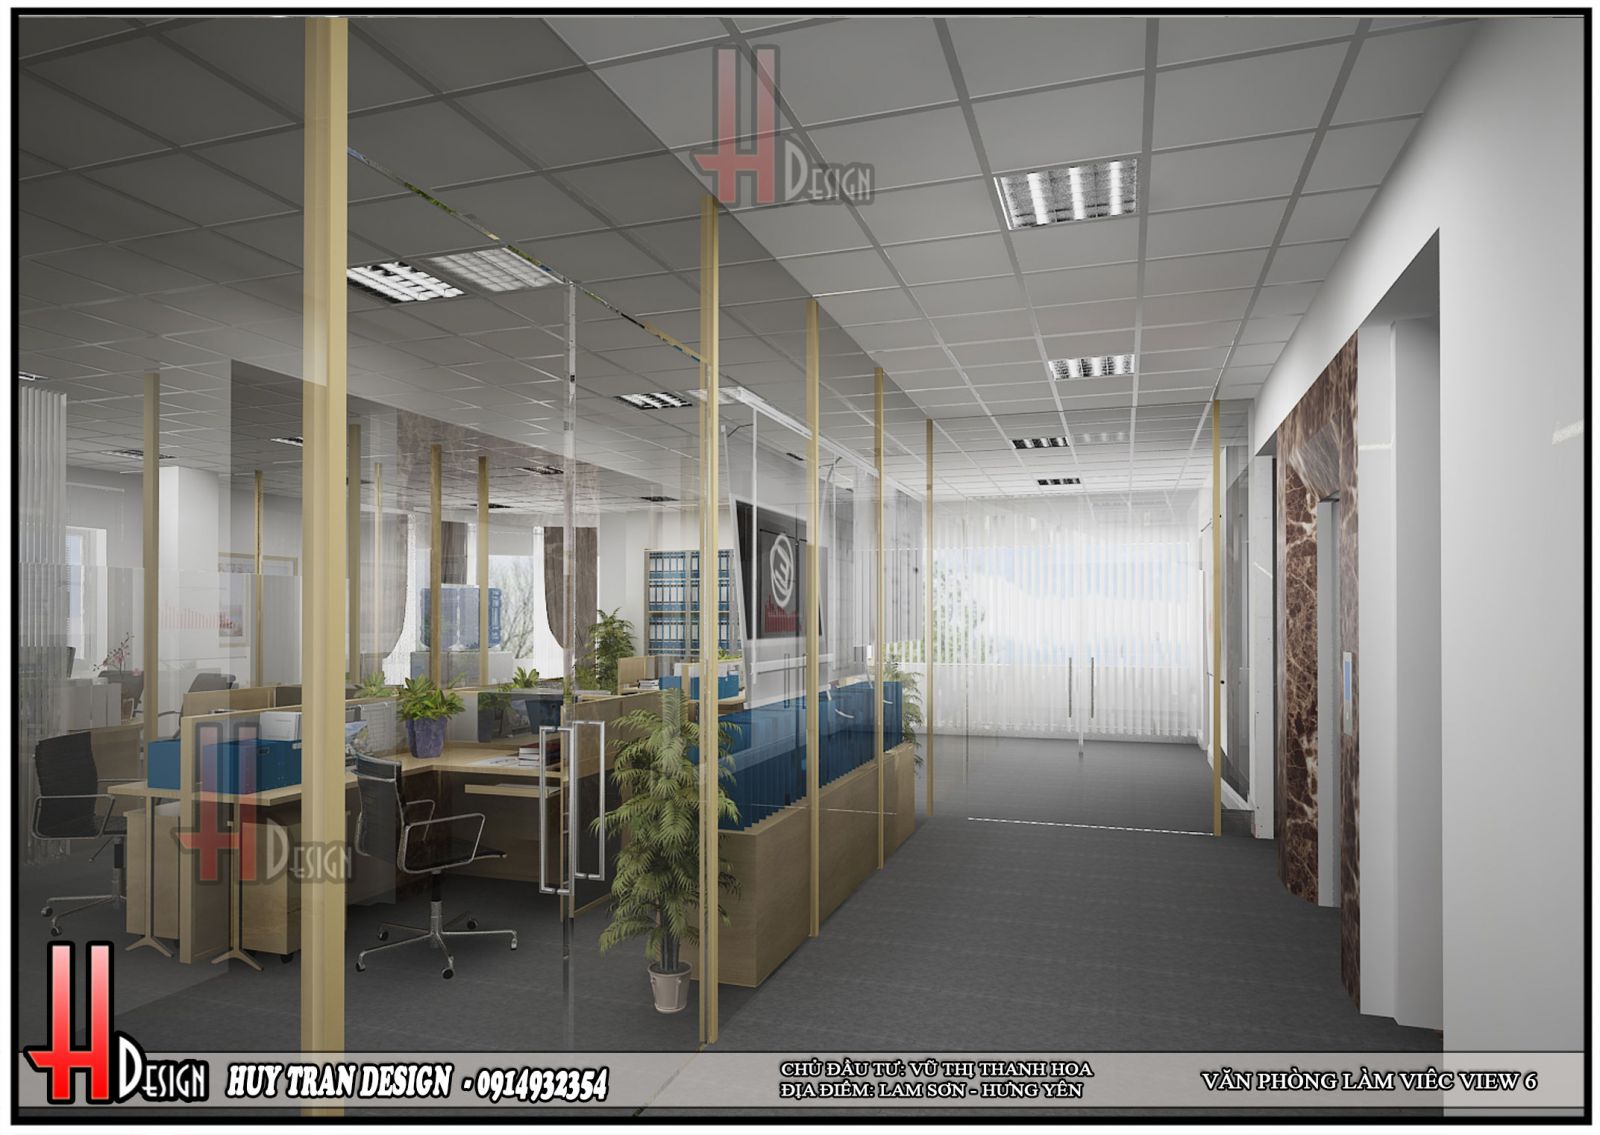 Phối cảnh thiết kế nội thất hiện đại văn phòng làm việc 5 tầng - Huytrandesign tư vấn, thiết kế, thi công, sửa chữa nhà cửa, biệt thự, văn phòng, cơ sở kinh doanh-v14